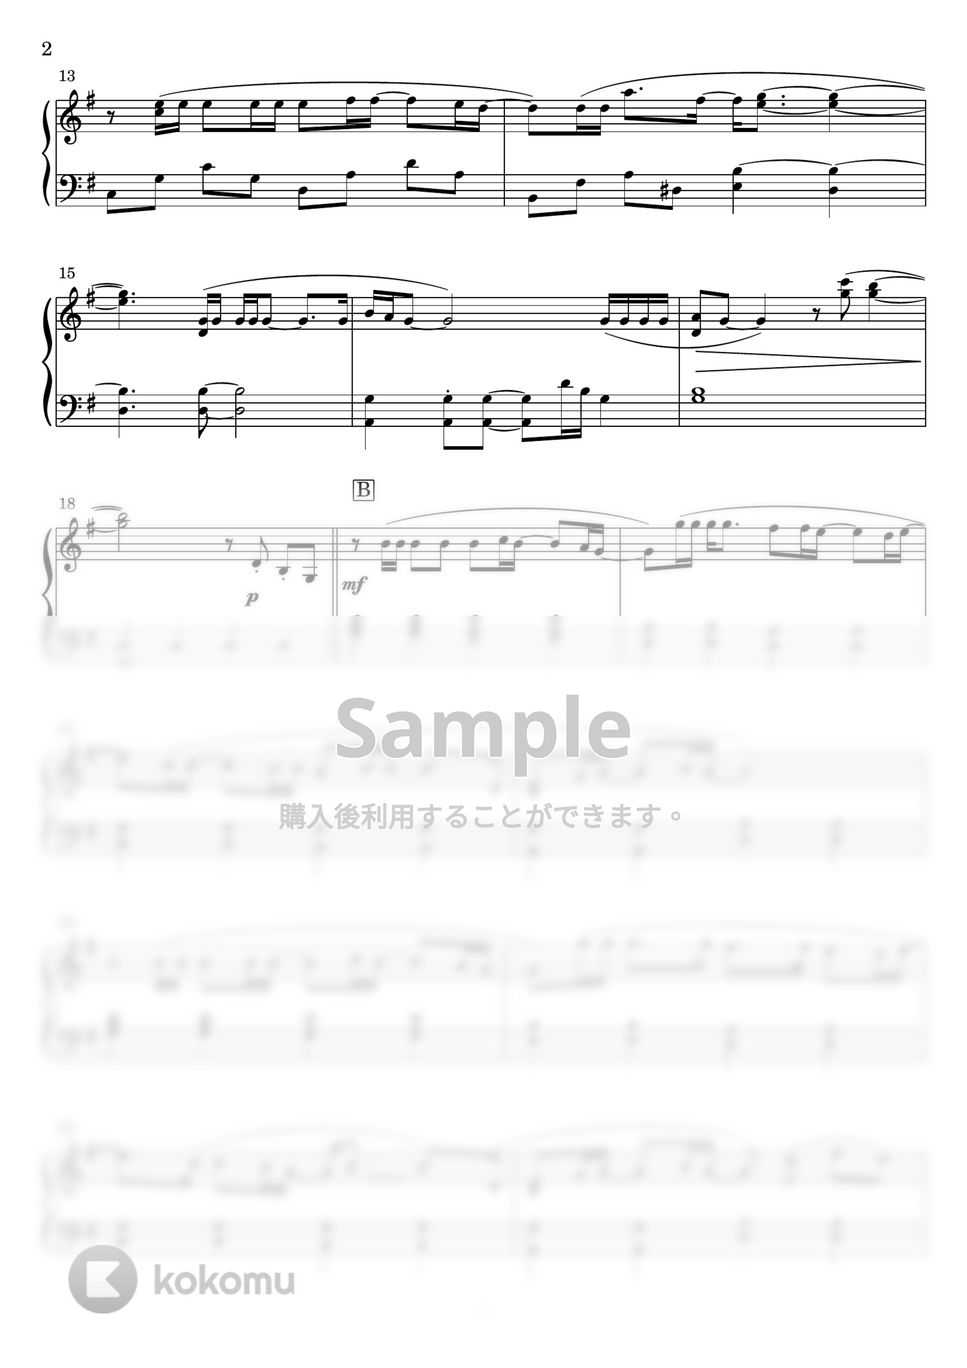 チューリップ - 青春の影 (ピアノソロ) by Miz